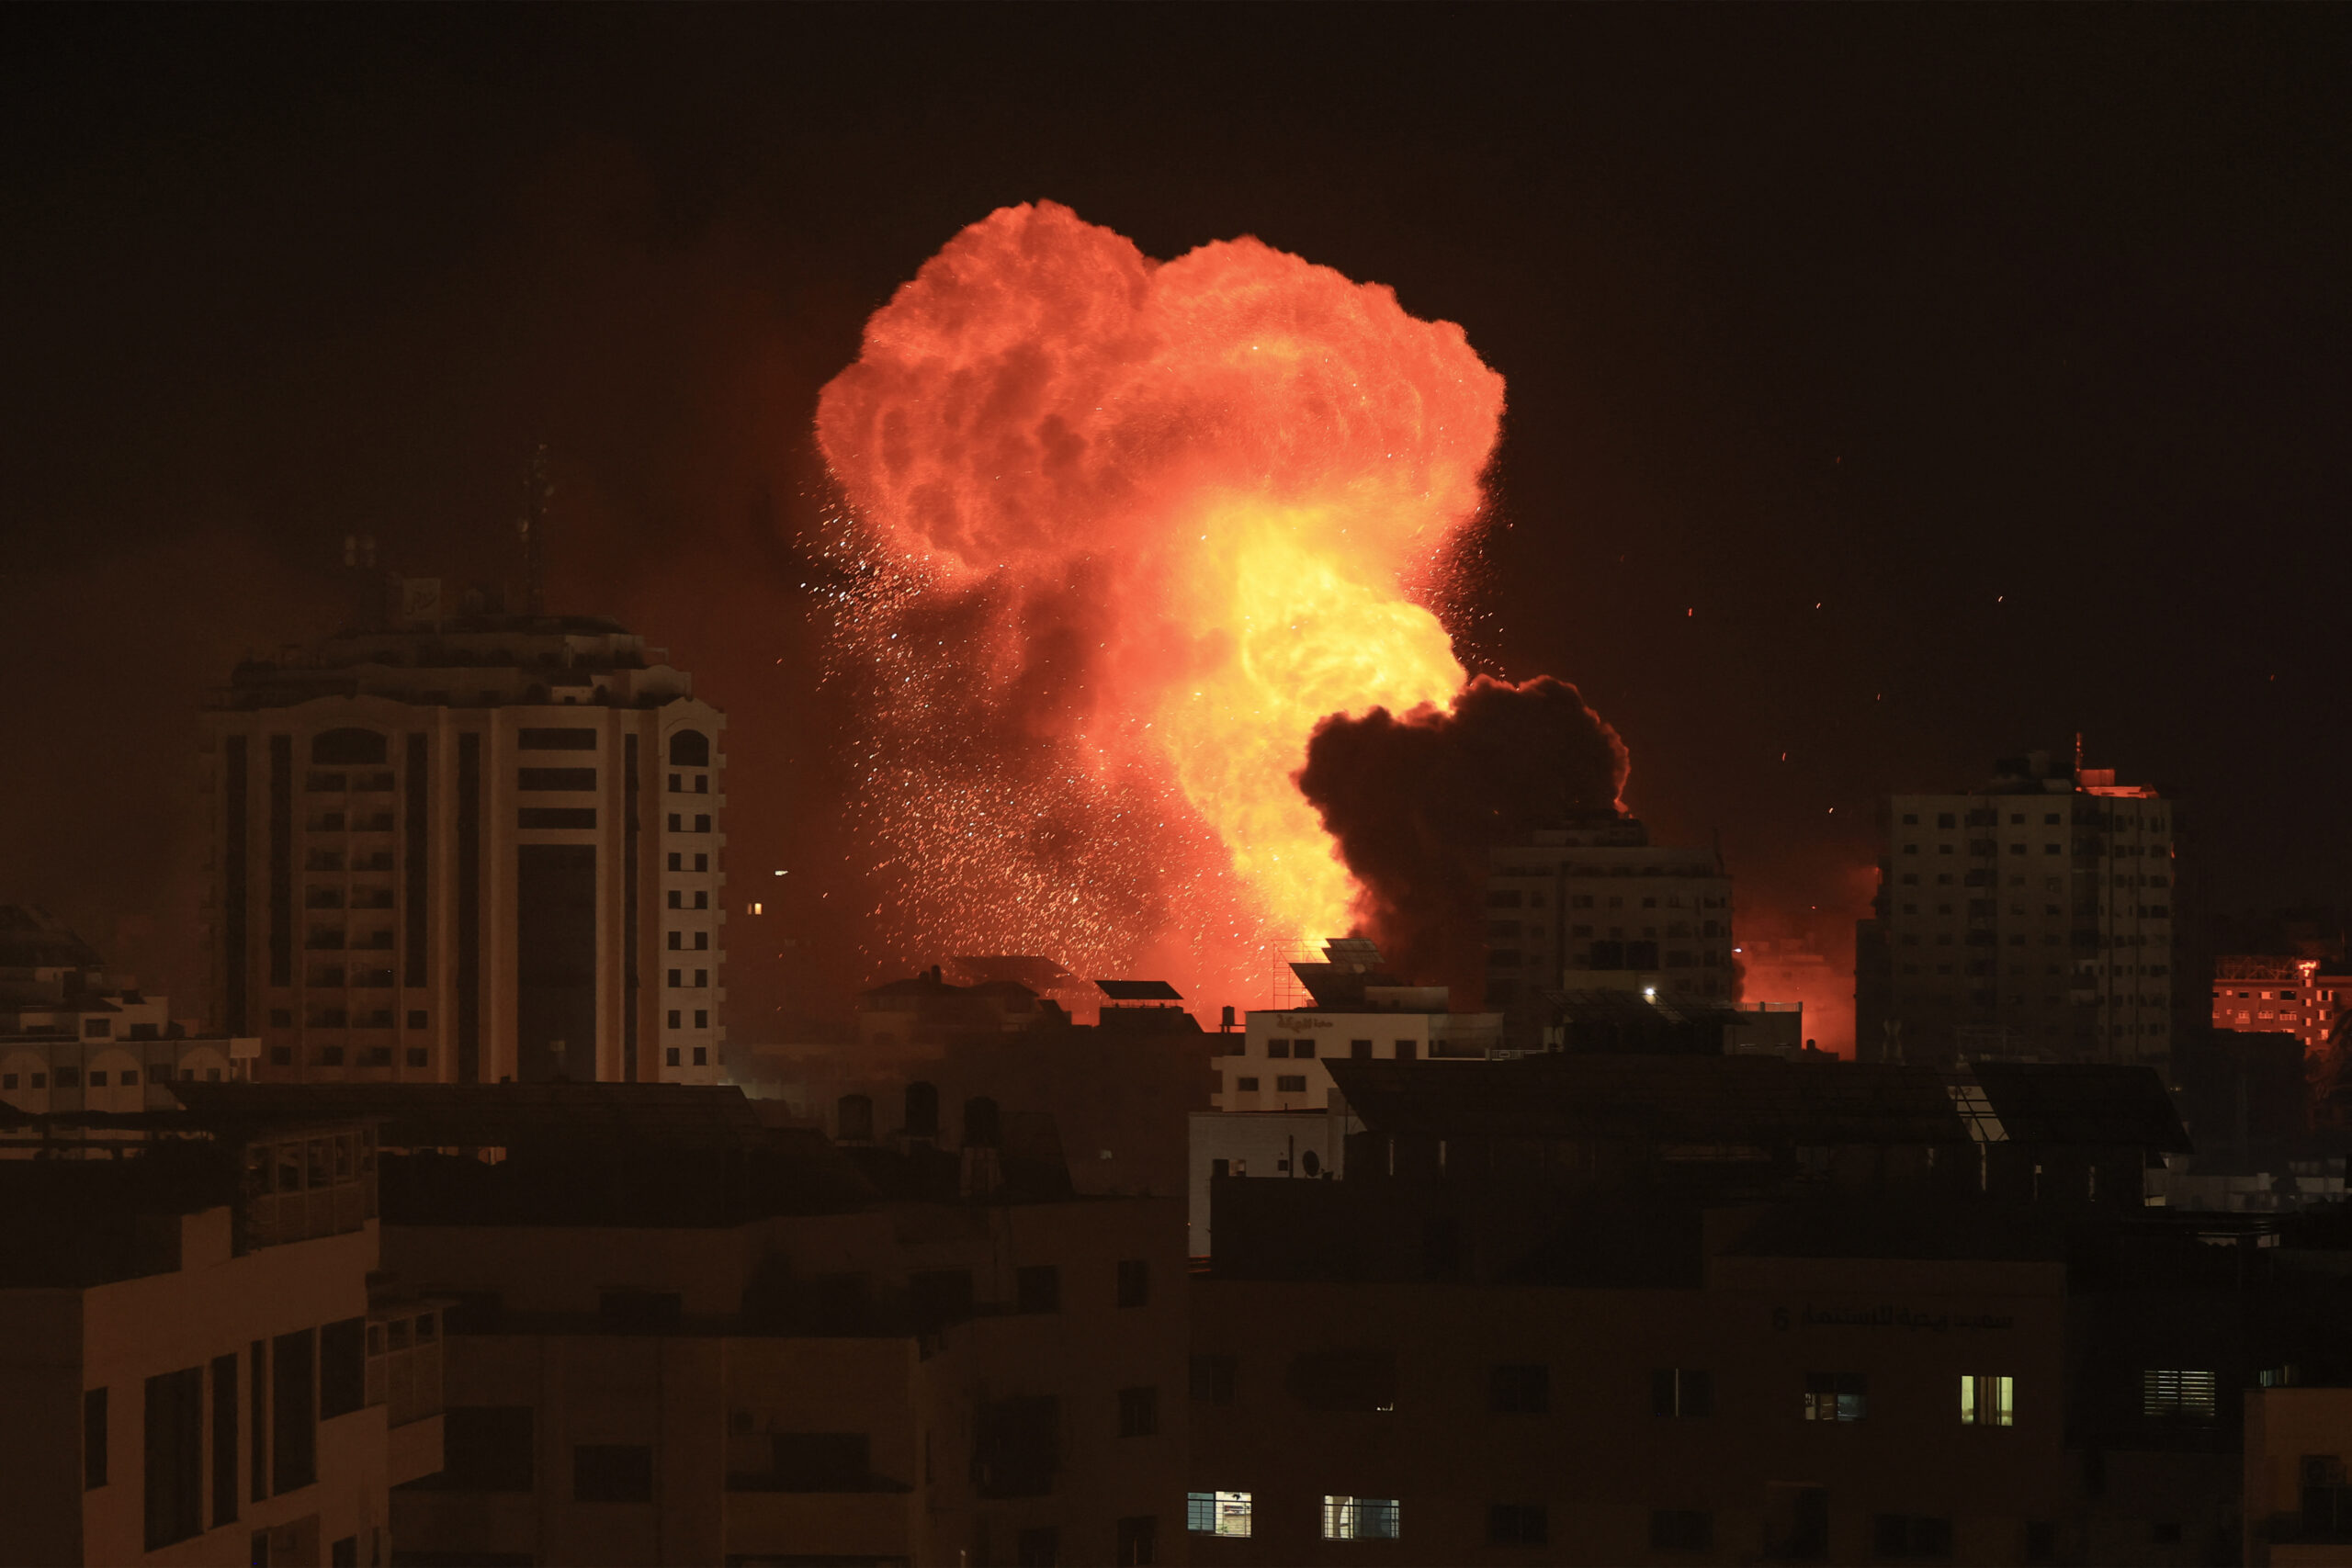 Ο αντίκτυπος του πολέμου Ισραήλ – Χαμάς στην τιμή του πετρελαίου: Τι είπε στην ΕΡΤ ο Θ. Τσακίρης, καθ. Γεωπολιτικής